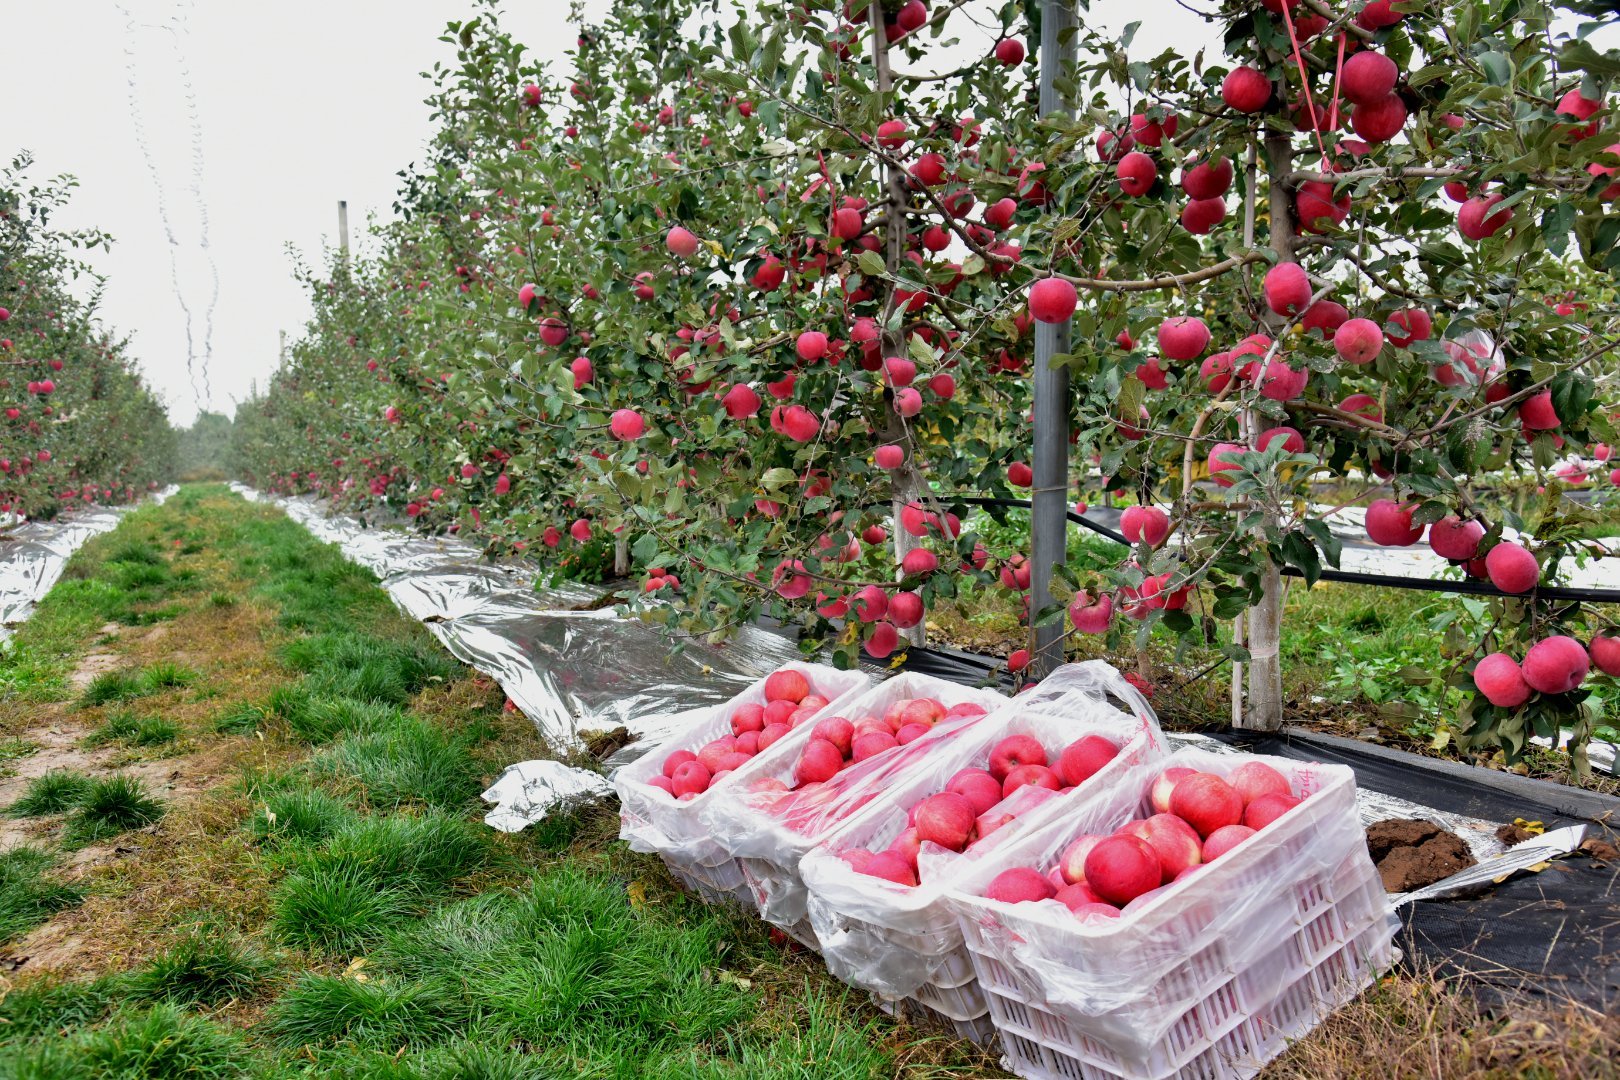 消费扶贫e起来丨小苹果成就脱贫大产业 白水县新模式带领果农转型升级